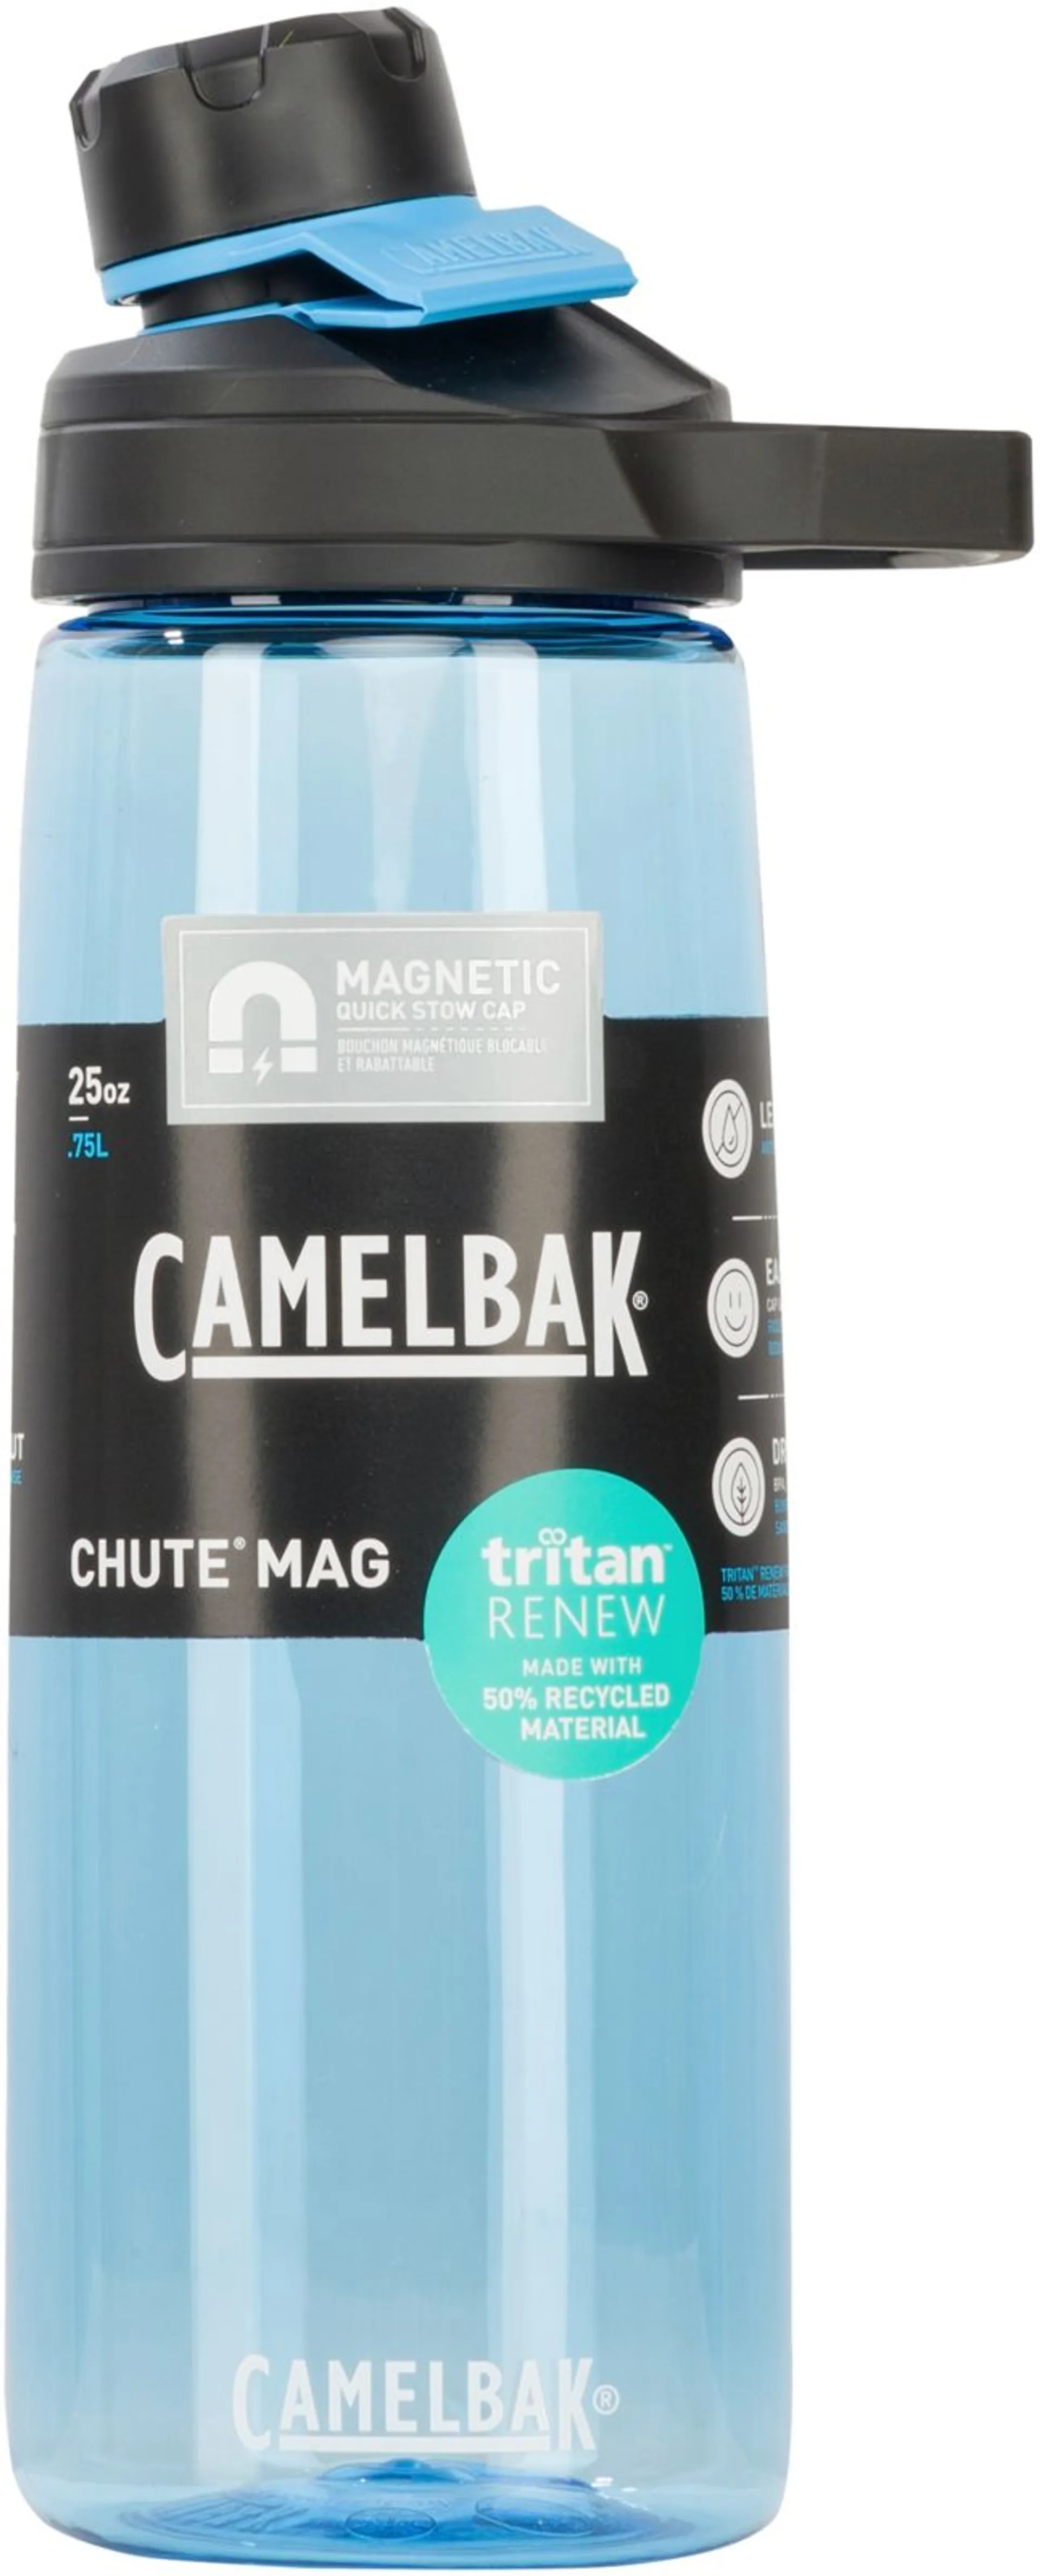 CamelBak juomapullo Chute Mag True Blue 0,75L